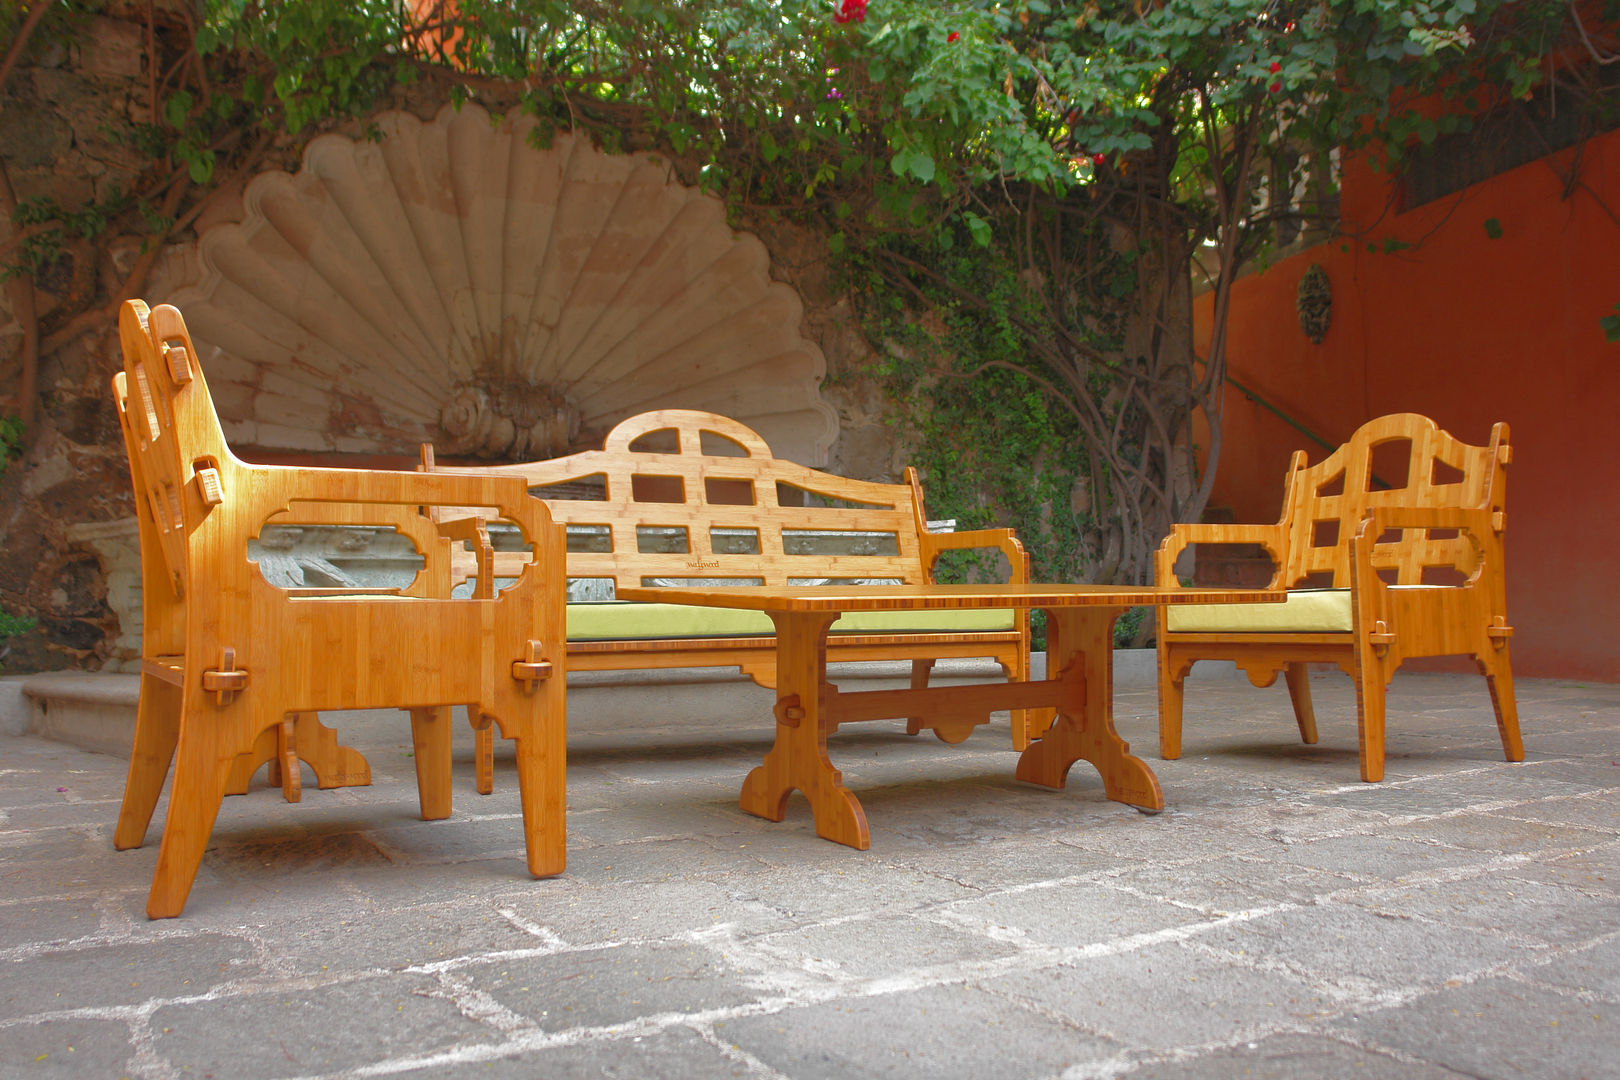 Juego de terraza fabricado de Bambú, Wedgewood Furniture Wedgewood Furniture モダンな庭 家具